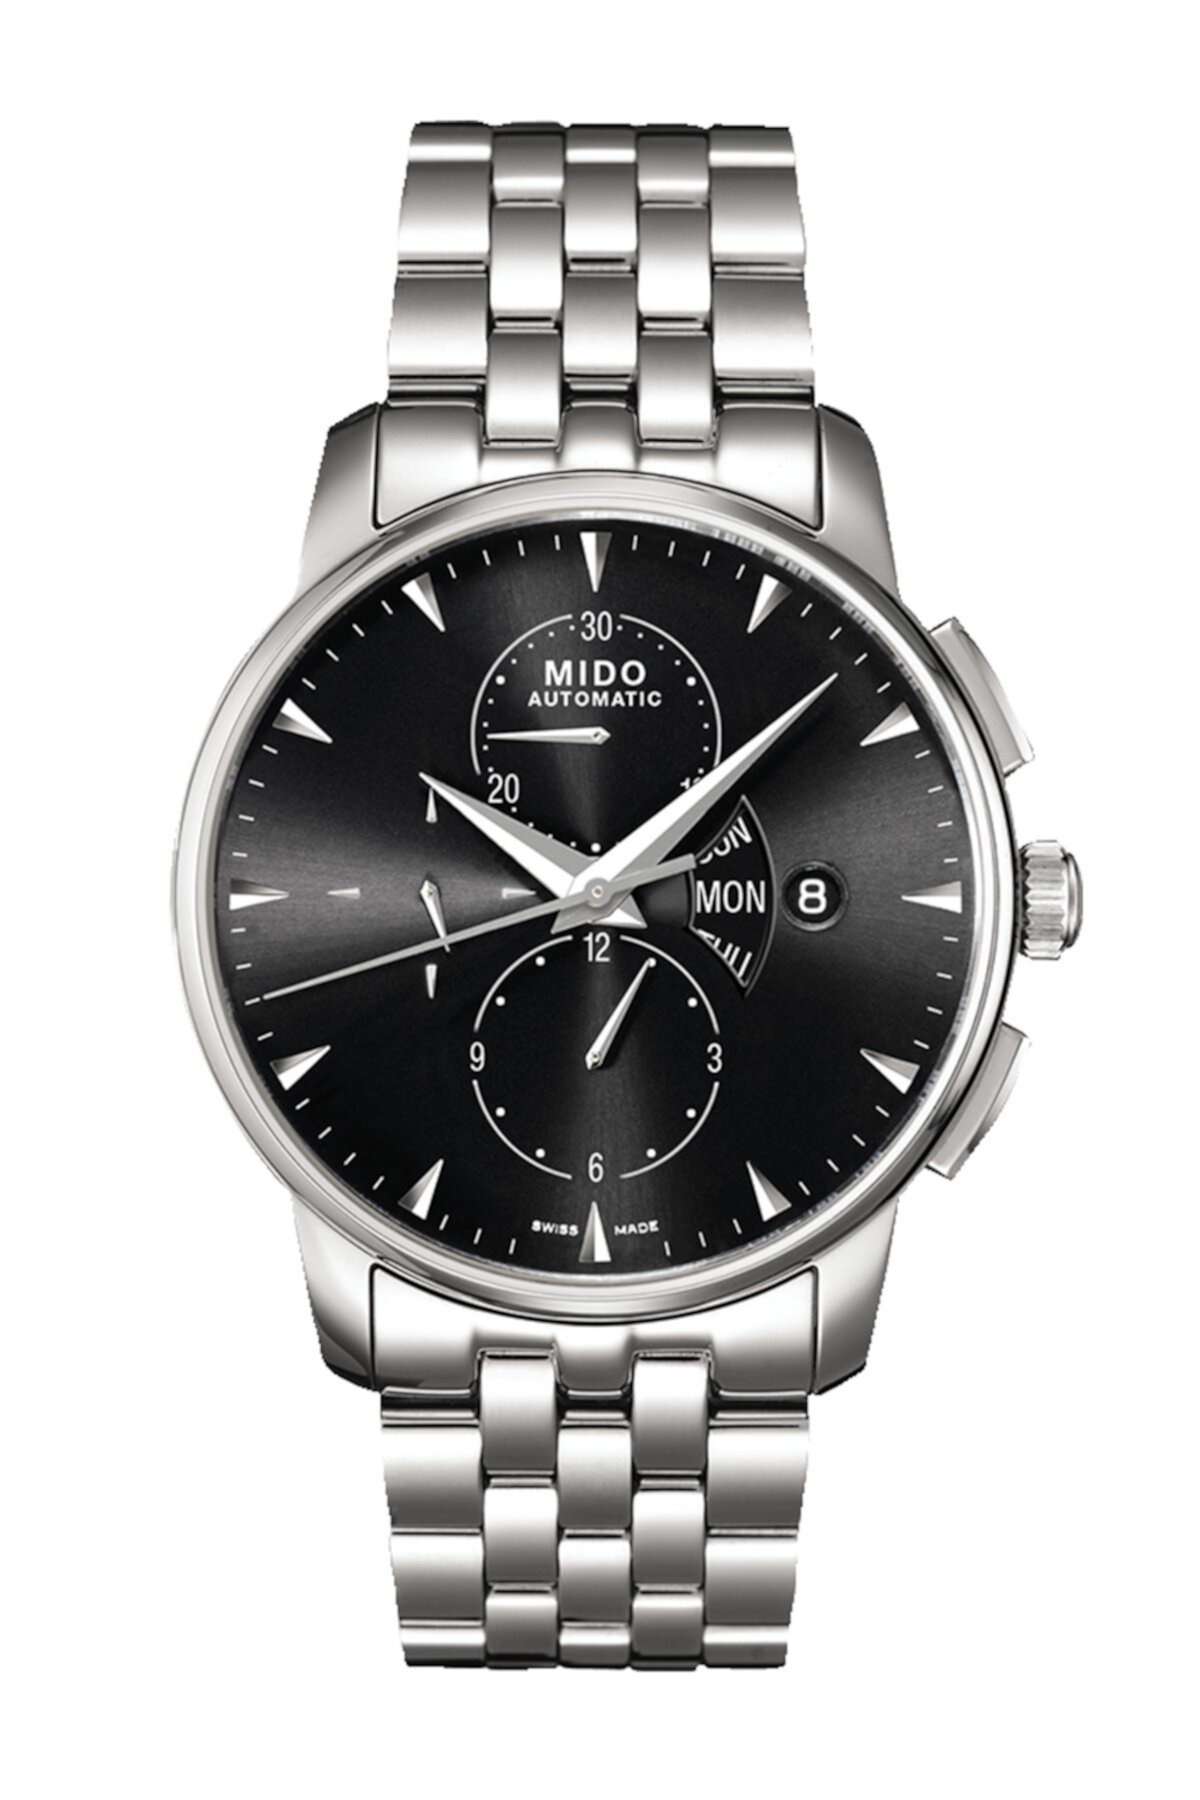 Мужские часы Baroncelli с автоматическим хронографом и черным циферблатом из нержавеющей стали, 42 мм MIDO